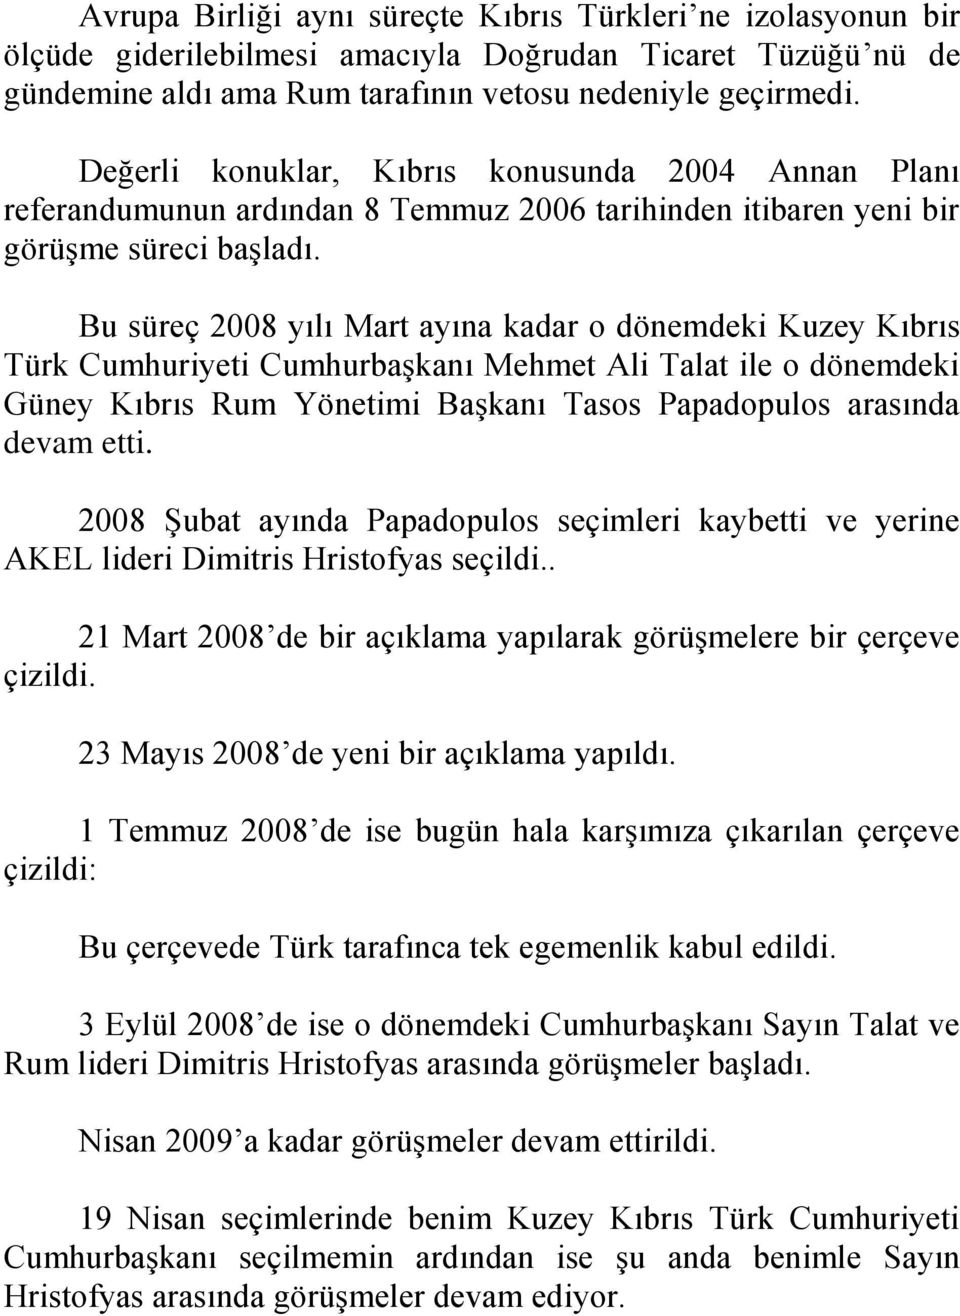 Bu süreç 2008 yılı Mart ayına kadar o dönemdeki Kuzey Kıbrıs Türk Cumhuriyeti Cumhurbaşkanı Mehmet Ali Talat ile o dönemdeki Güney Kıbrıs Rum Yönetimi Başkanı Tasos Papadopulos arasında devam etti.